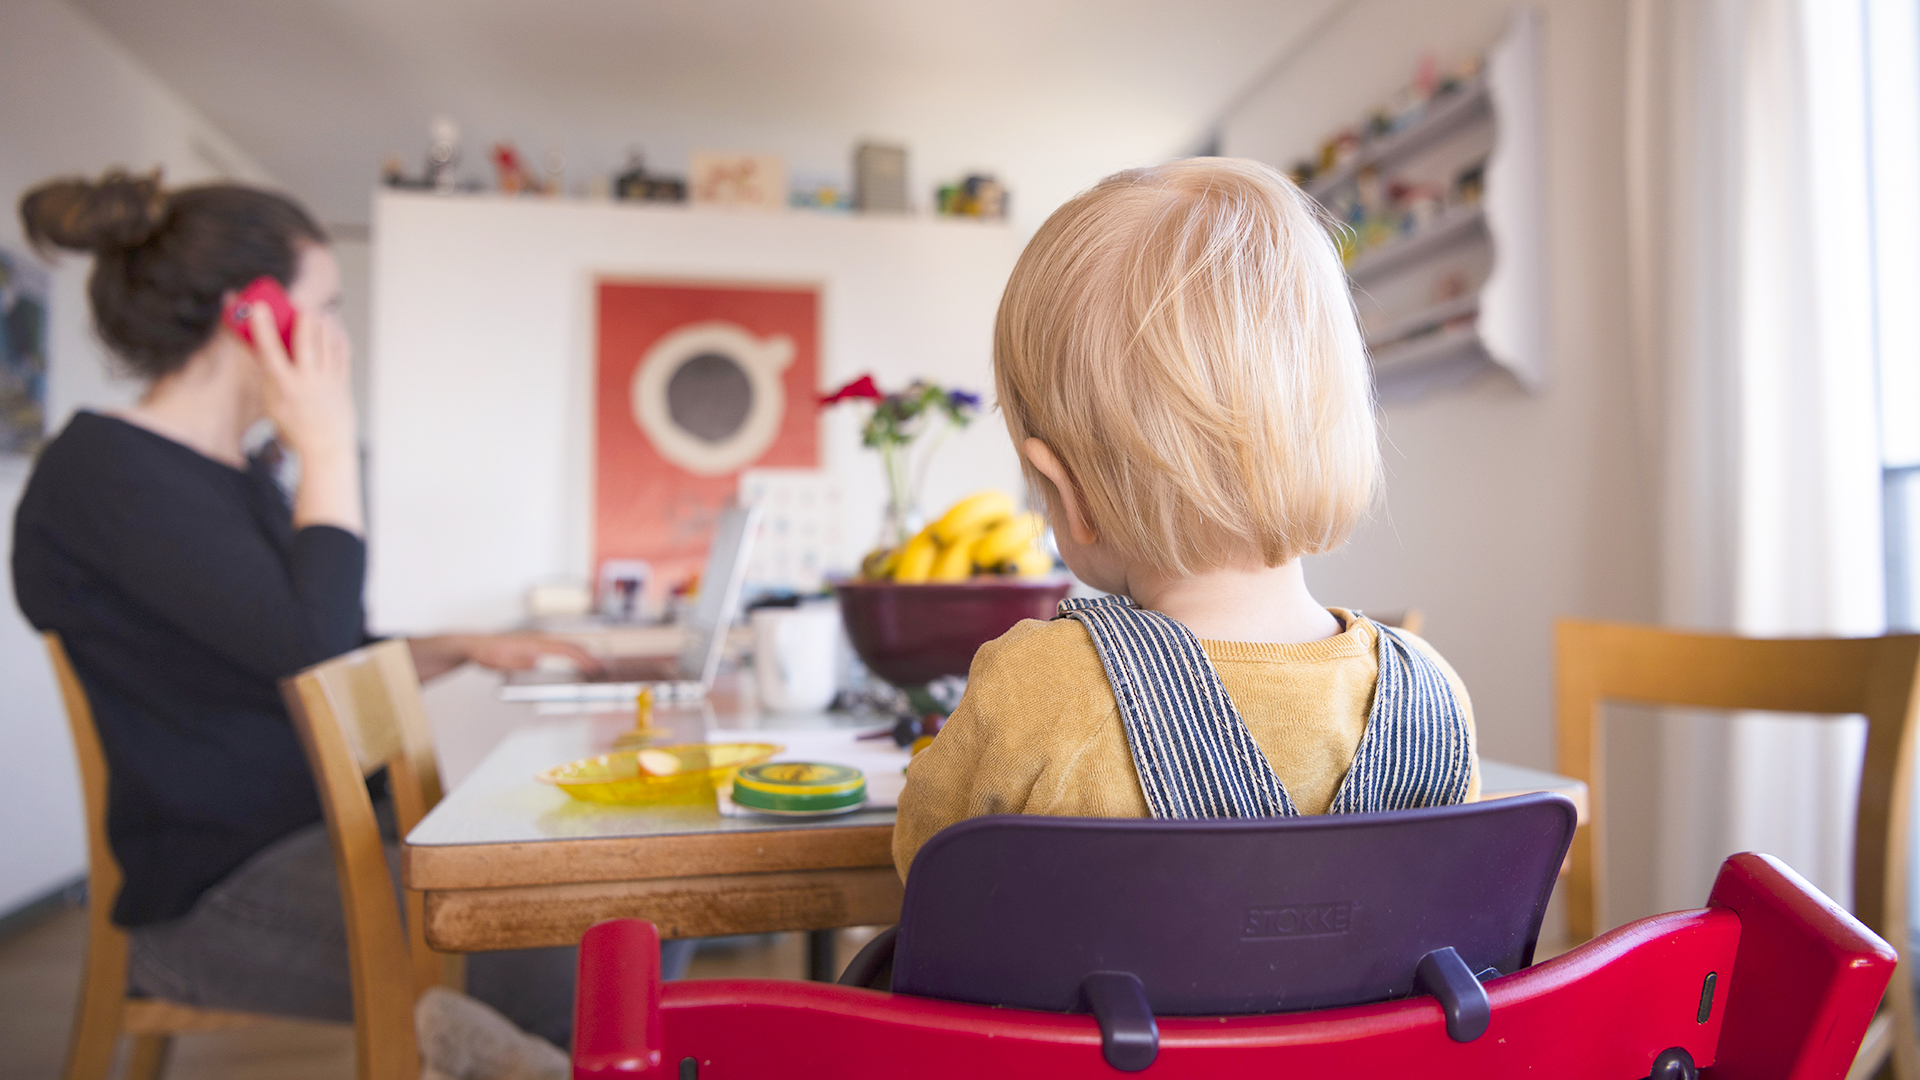  Eine Frau sitzt im Homeoffice an ihrem Laptop und telefoniert, während ihr Kind neben ihr in einem Kinderstuhl am Tisch sitzt.